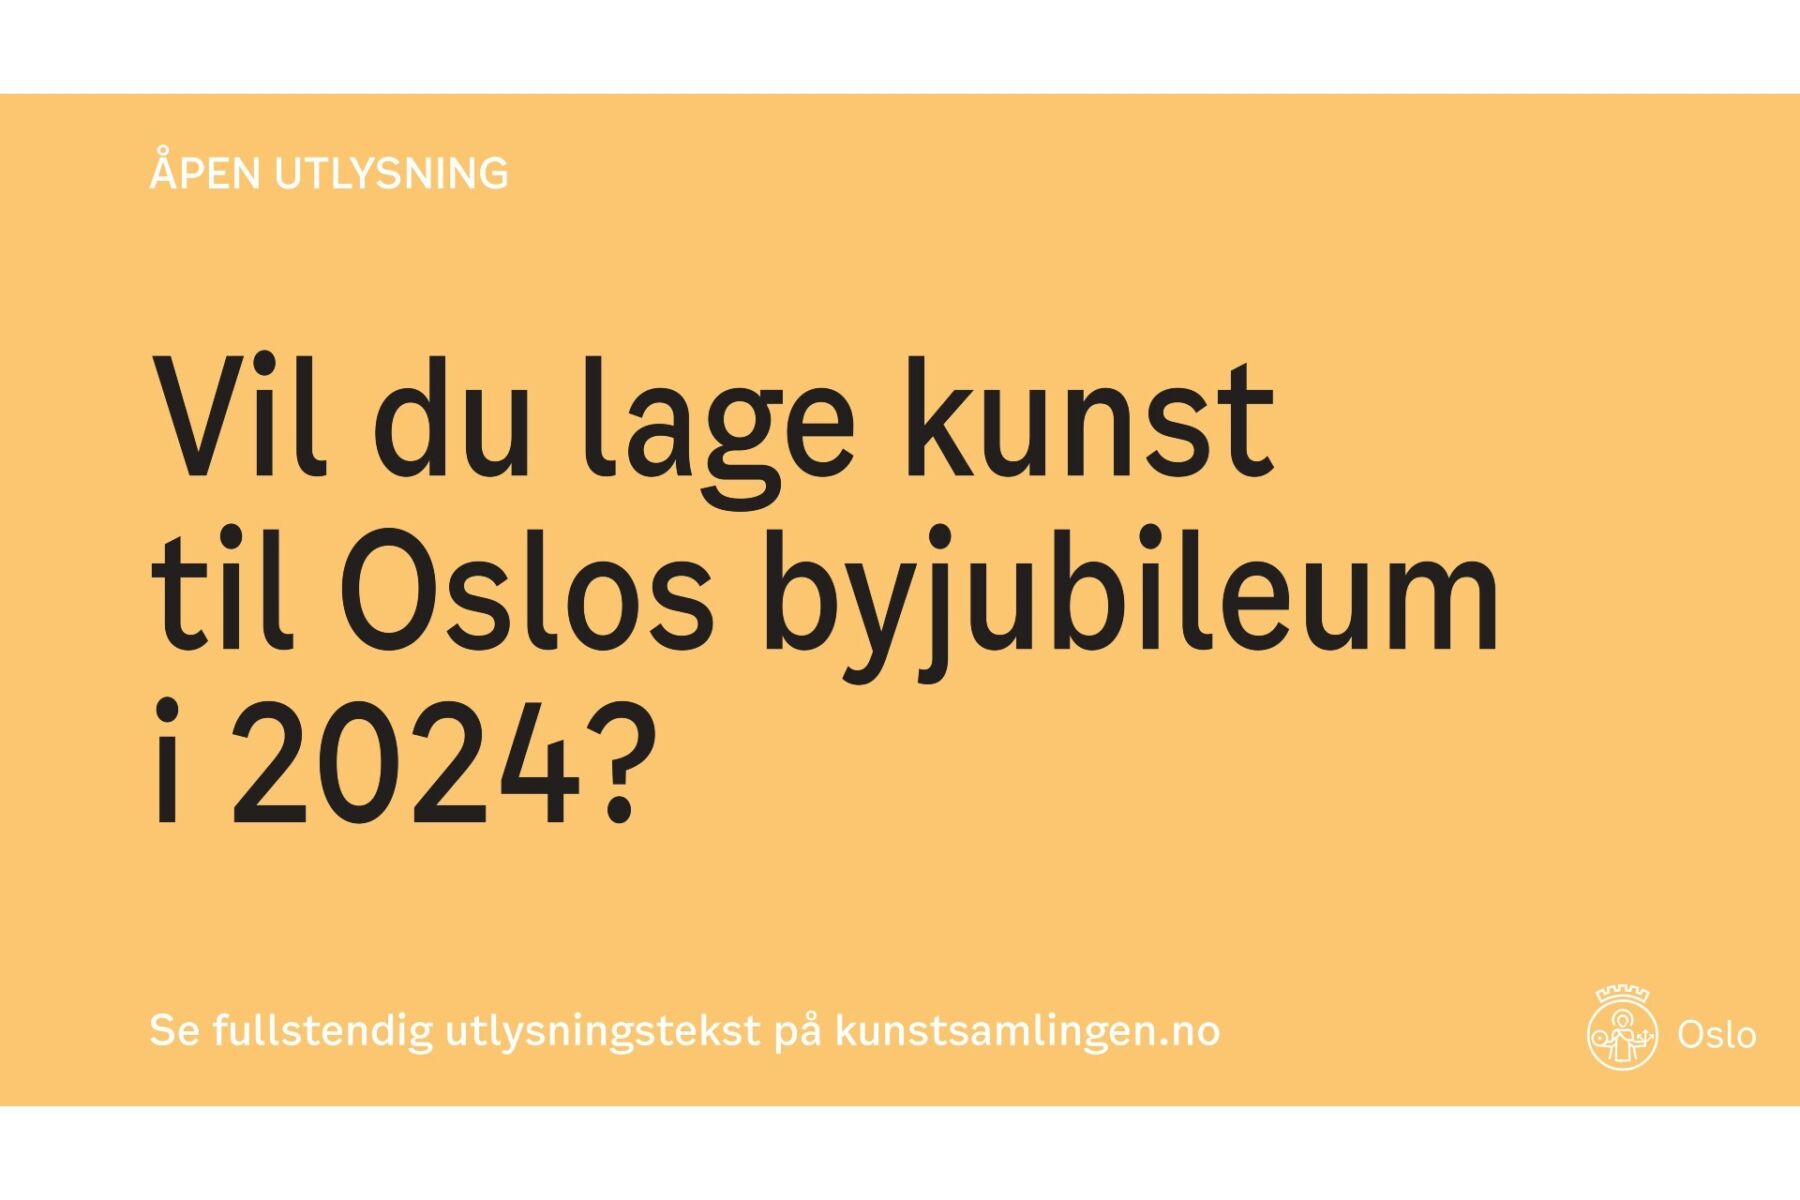 Annonse med sort tekst på gul bakgrunn hvor det står: "Åpen utlysning. Vil du lage kunst til Oslos byjubileum i 2024? Se fullstendig utlysning på kunstsamlingen.no". Grafisk annonse